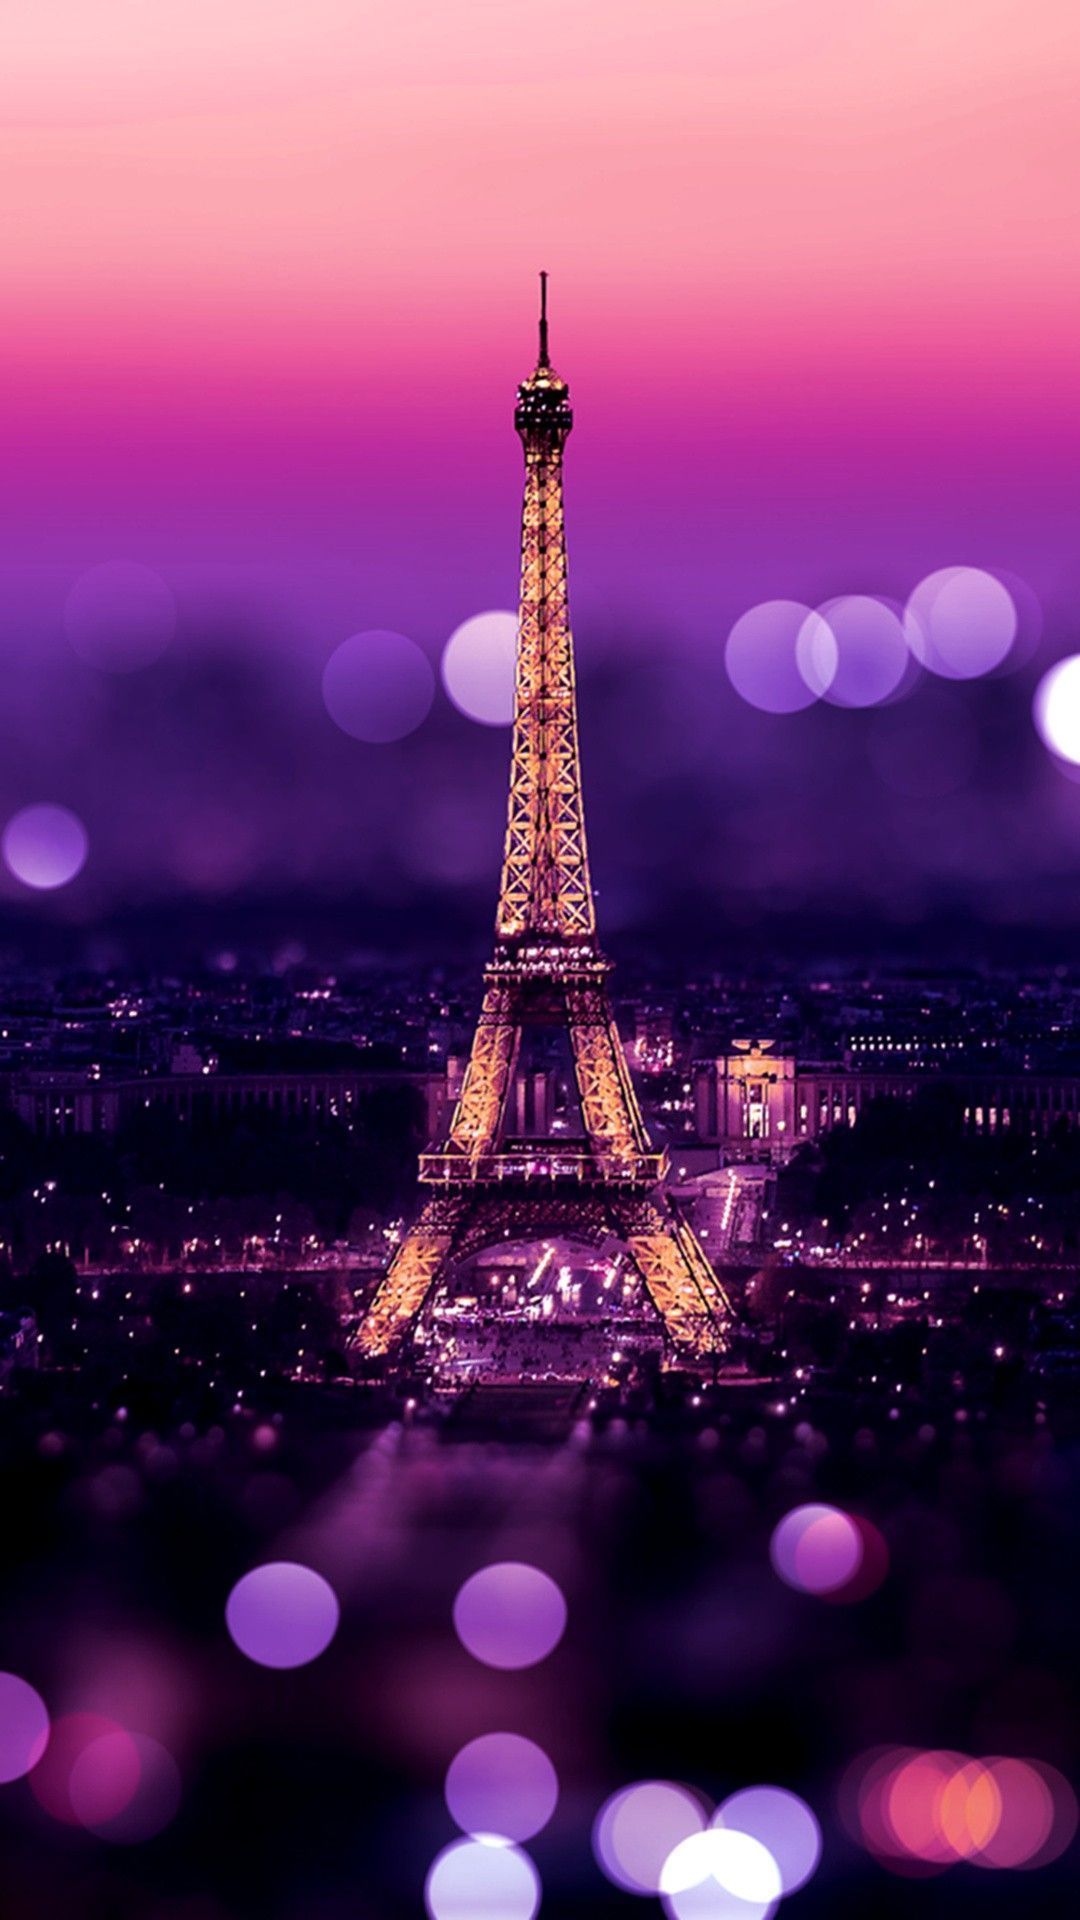 Pink Eiffel Tower Paris France Wallpaper. Paris wallpaper iphone, Paris wallpaper, Galaxy wallpaper